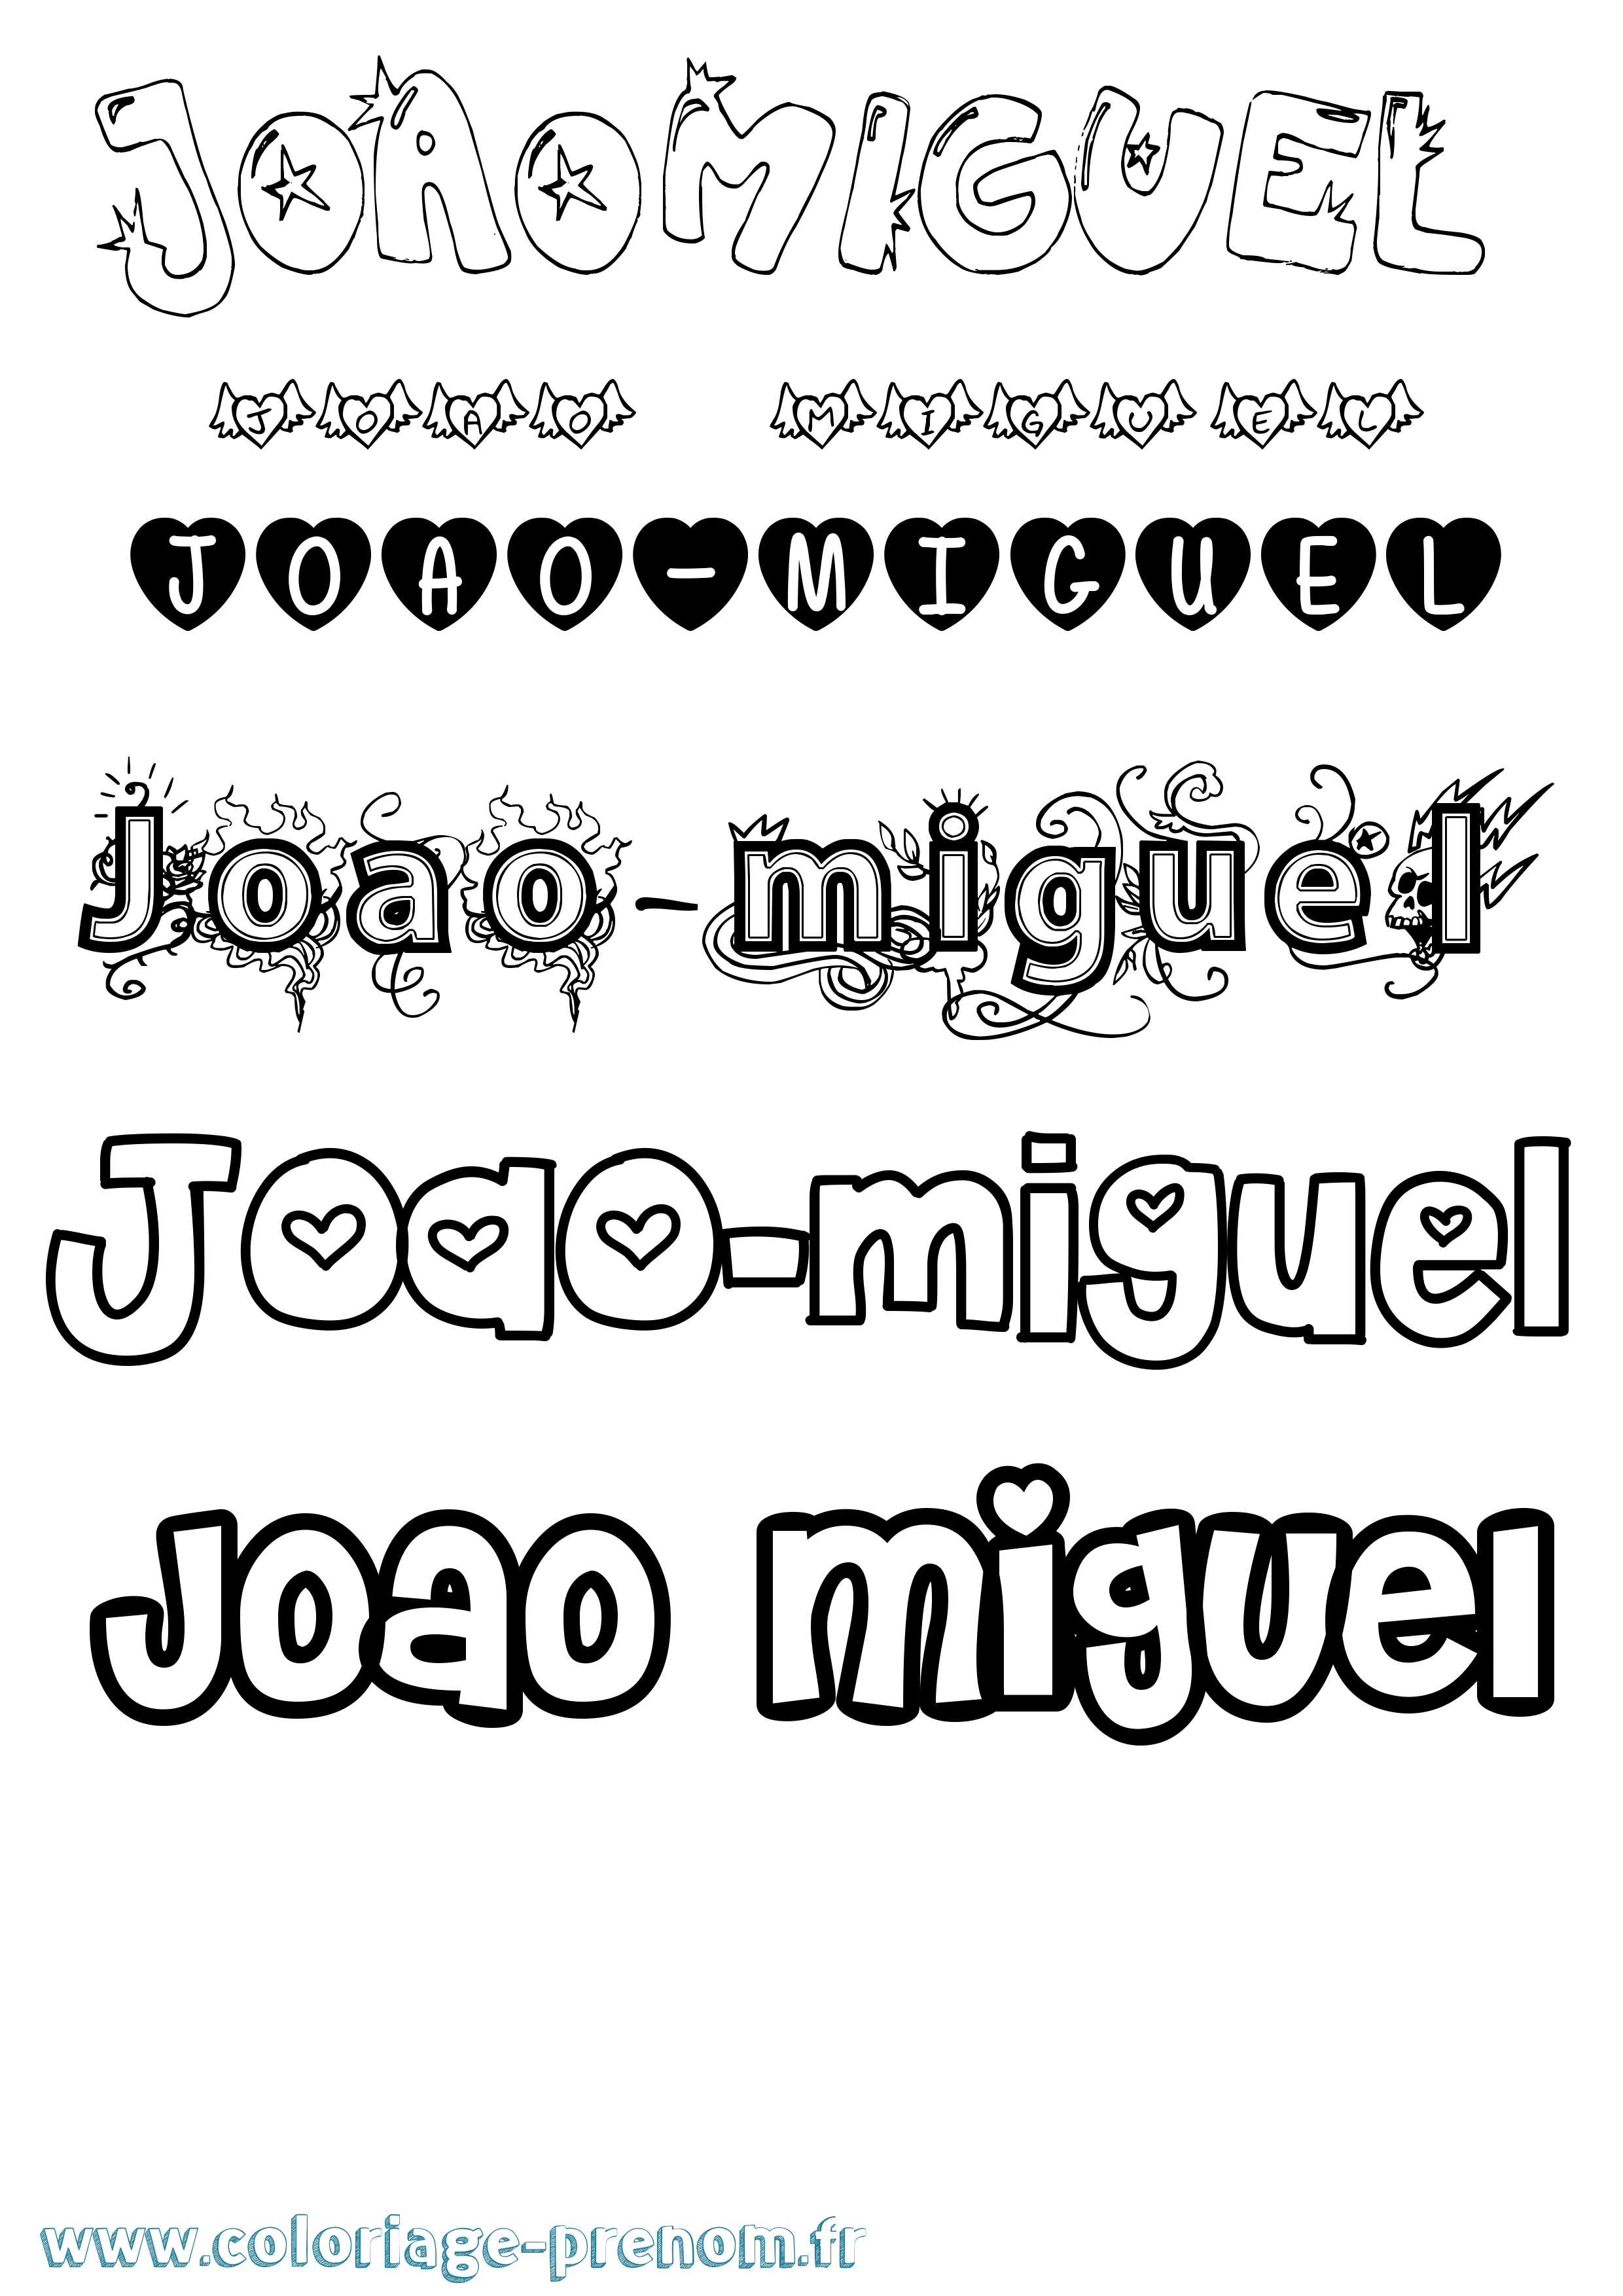 Coloriage prénom Joao-Miguel Girly